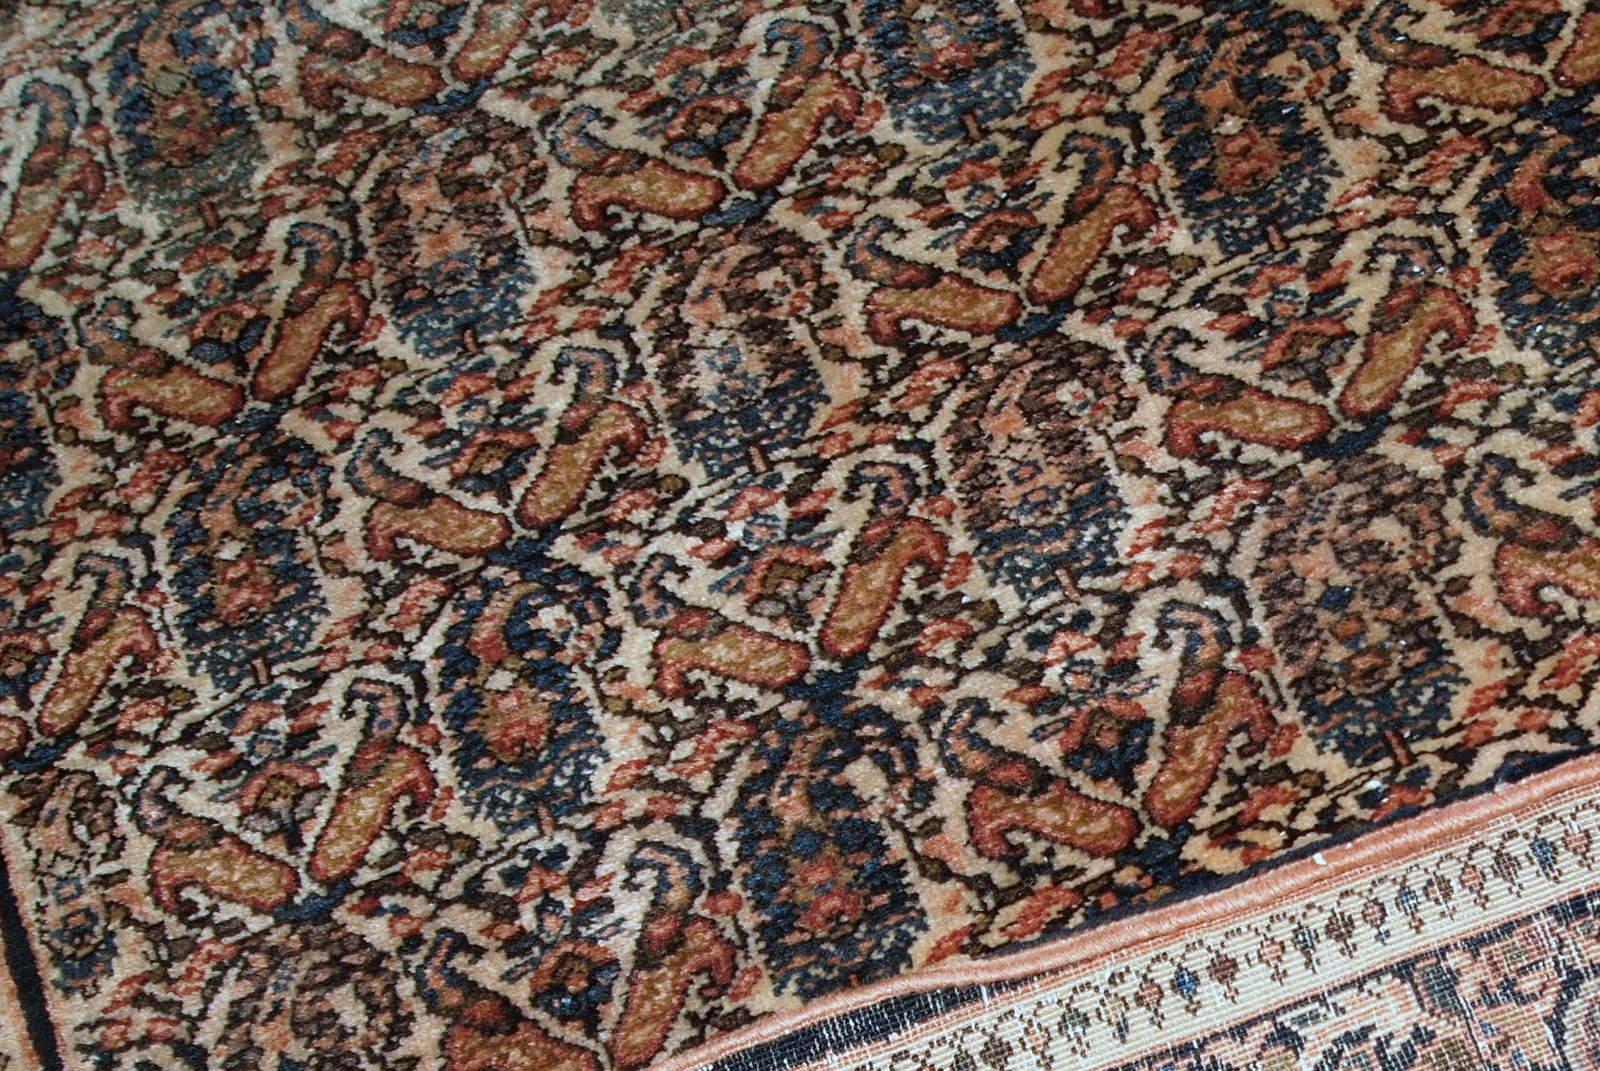 Tapis Farahan ancien fait à la main en bon état d'origine. Le tapis a été fabriqué au début du 20e siècle avec un design all-over.

?-condition : original bon,

-circa : 1900s,

-taille : 4,2' x 6,3' (128cm x 192cm),

-matériau :